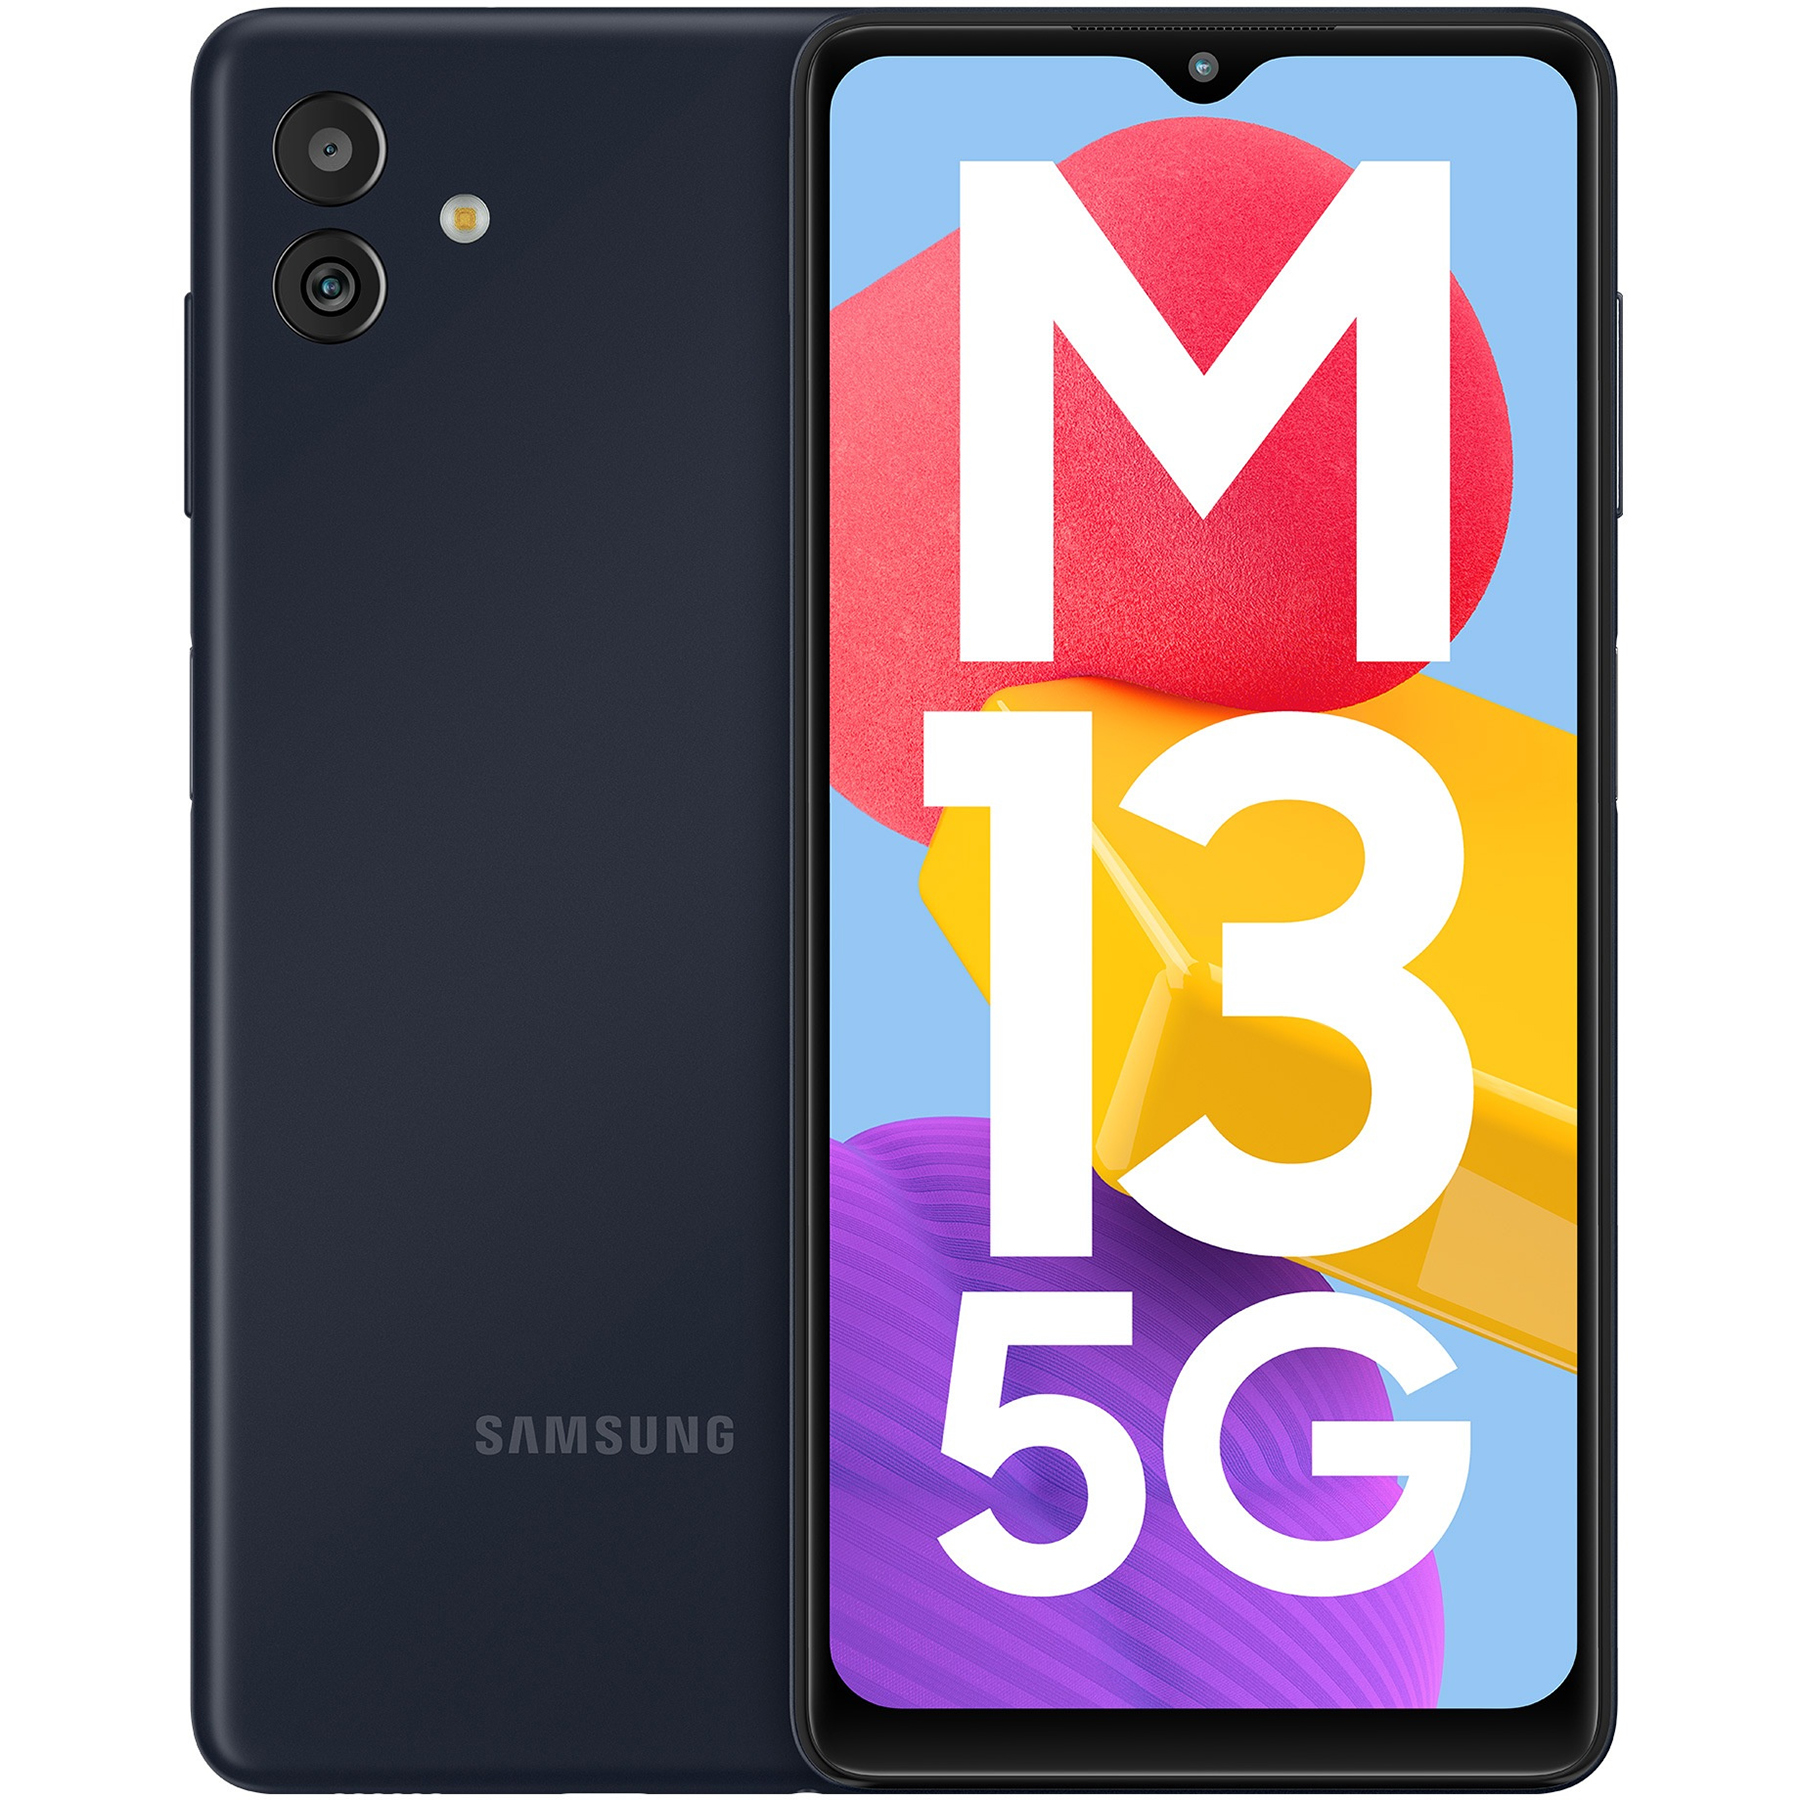 گوشی موبایل سامسونگ مدل Galaxy M13 5G دو سیم کارت ظرفیت 128 گیگابایت و رم 6 گیگابایت - پک هند